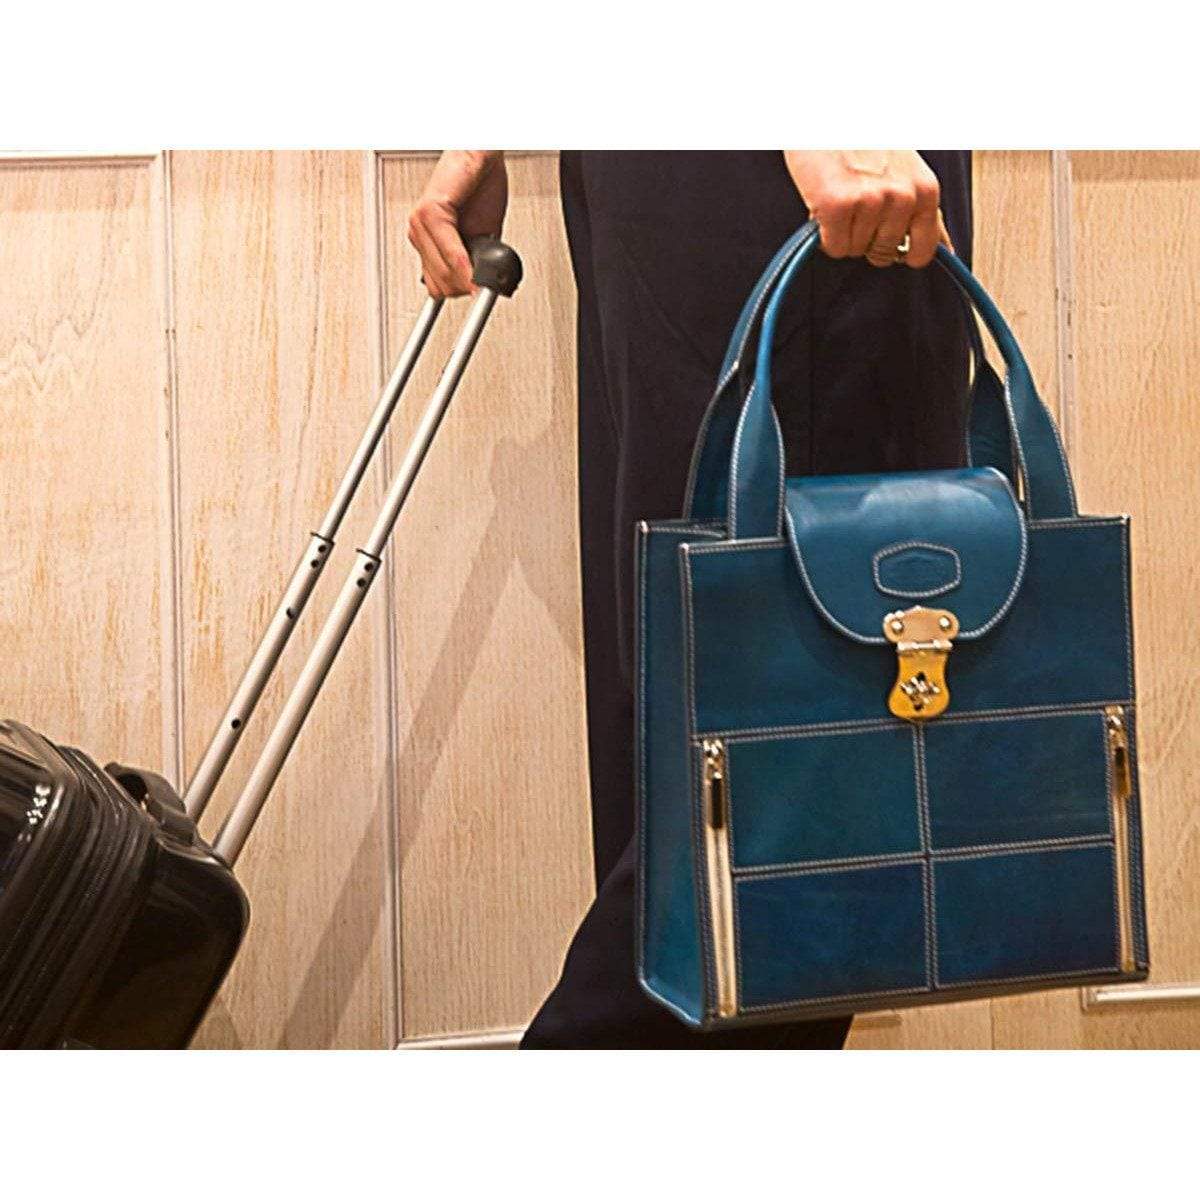 Constancia Made in Italy Women Handbag Shopping and Shoulder Bag